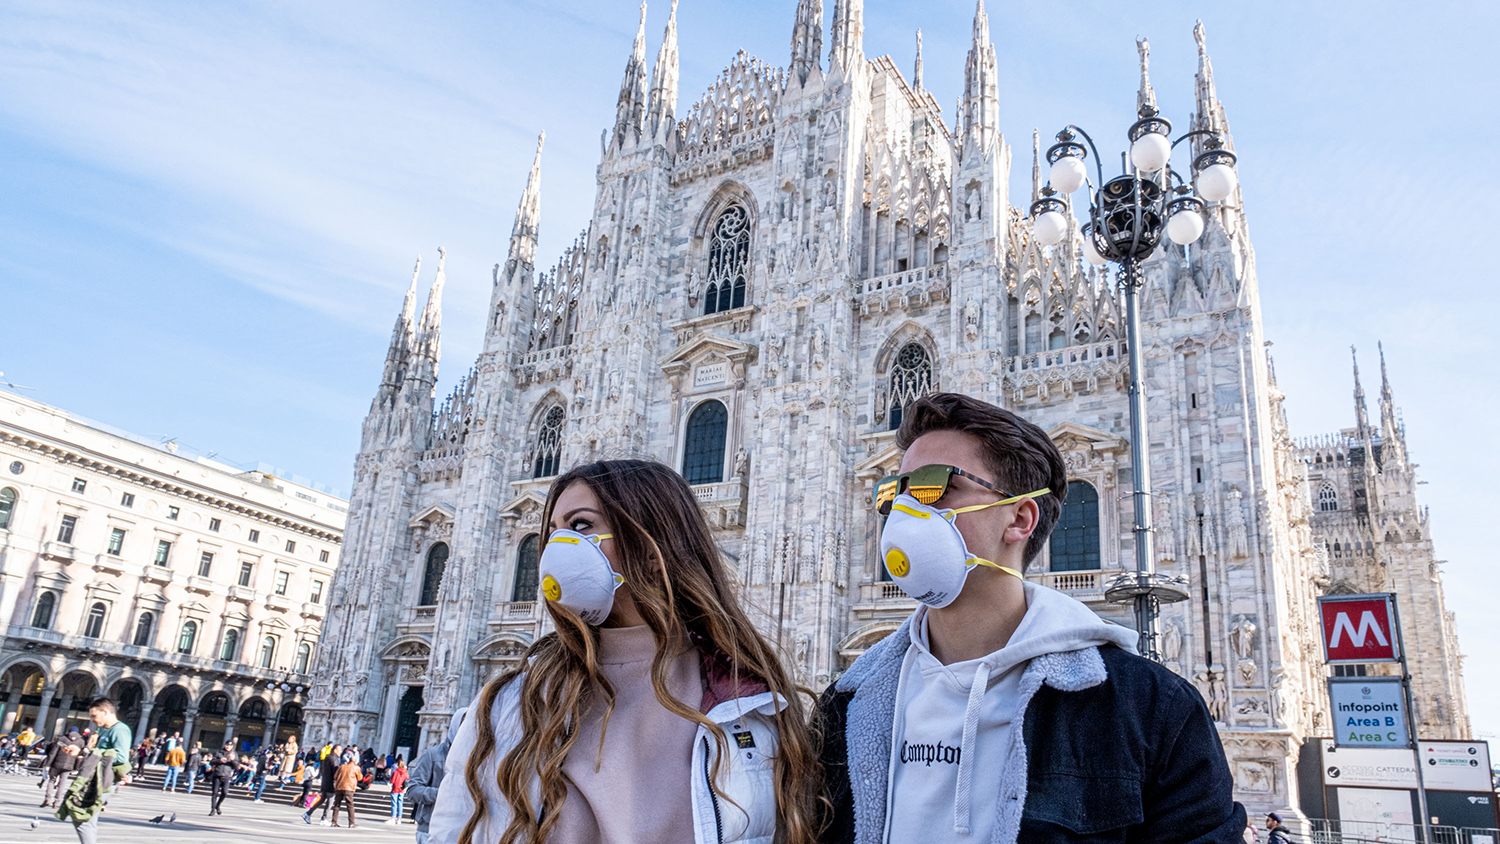 Италия закрывает дискотеки из-за коронавируса